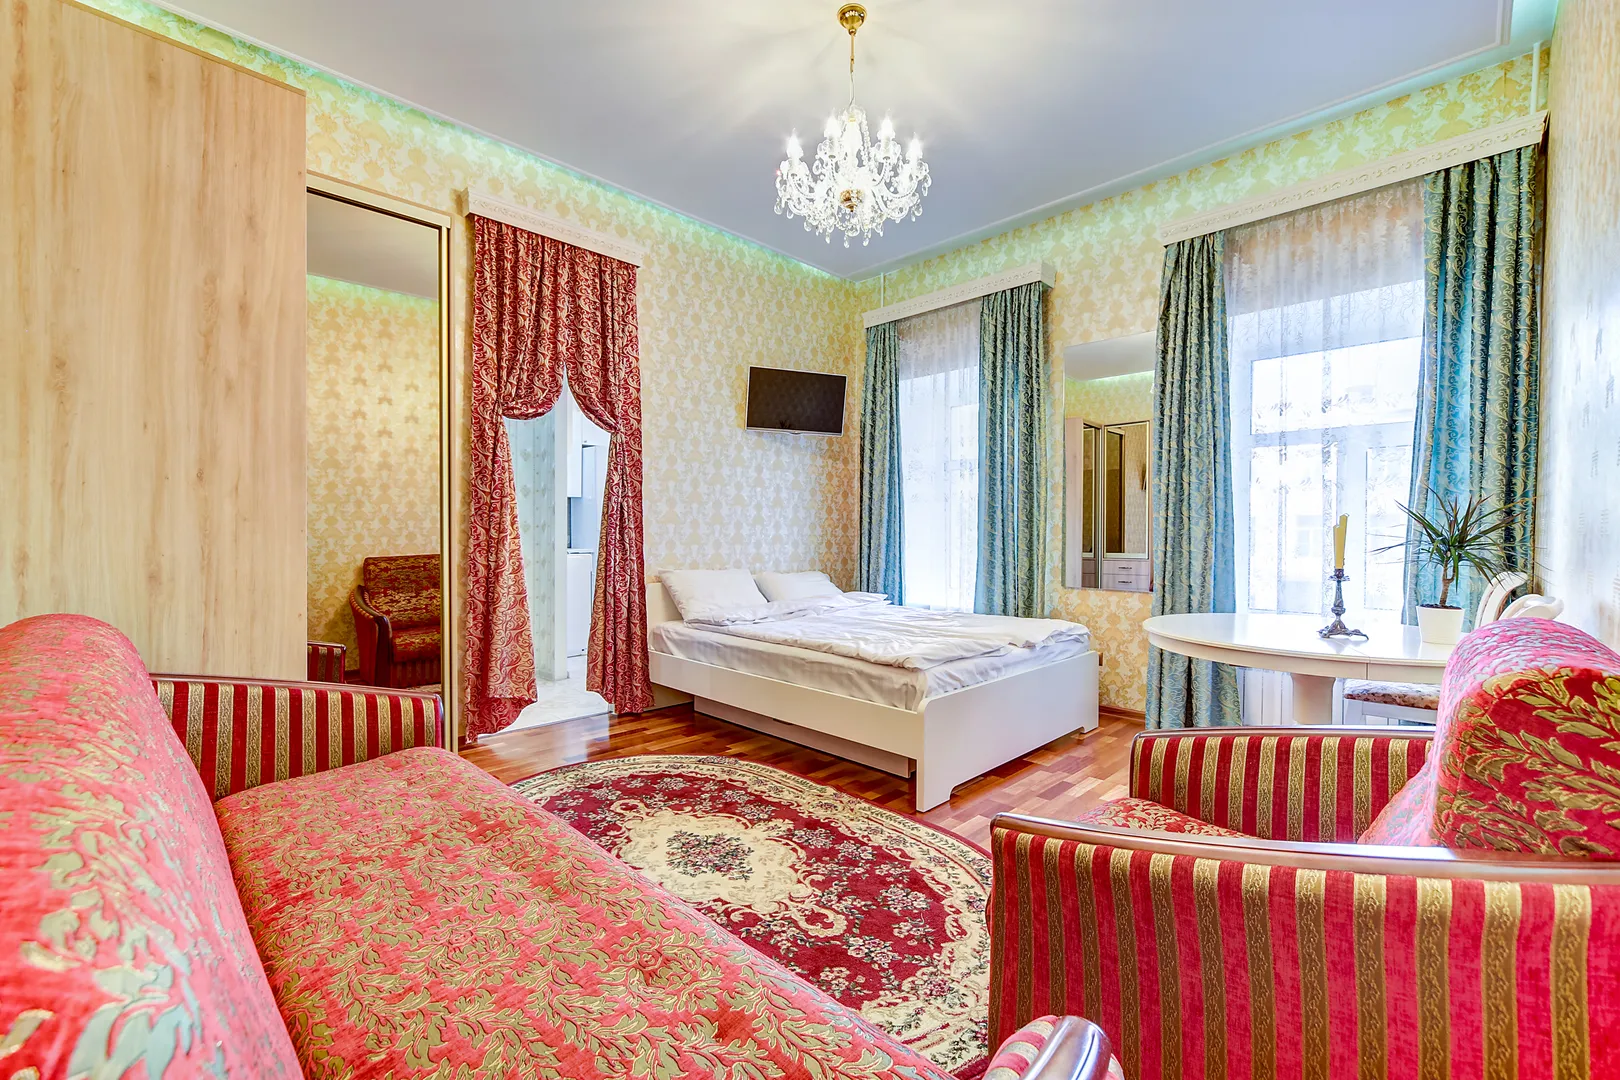 Диван раскладывается в спальное место для двух гостей (накрывается наматрасником и таким же красивым спальным комплектом как показано на кровати). Кресло раскладывается в дополнительное спальное место для 5-го гостя.